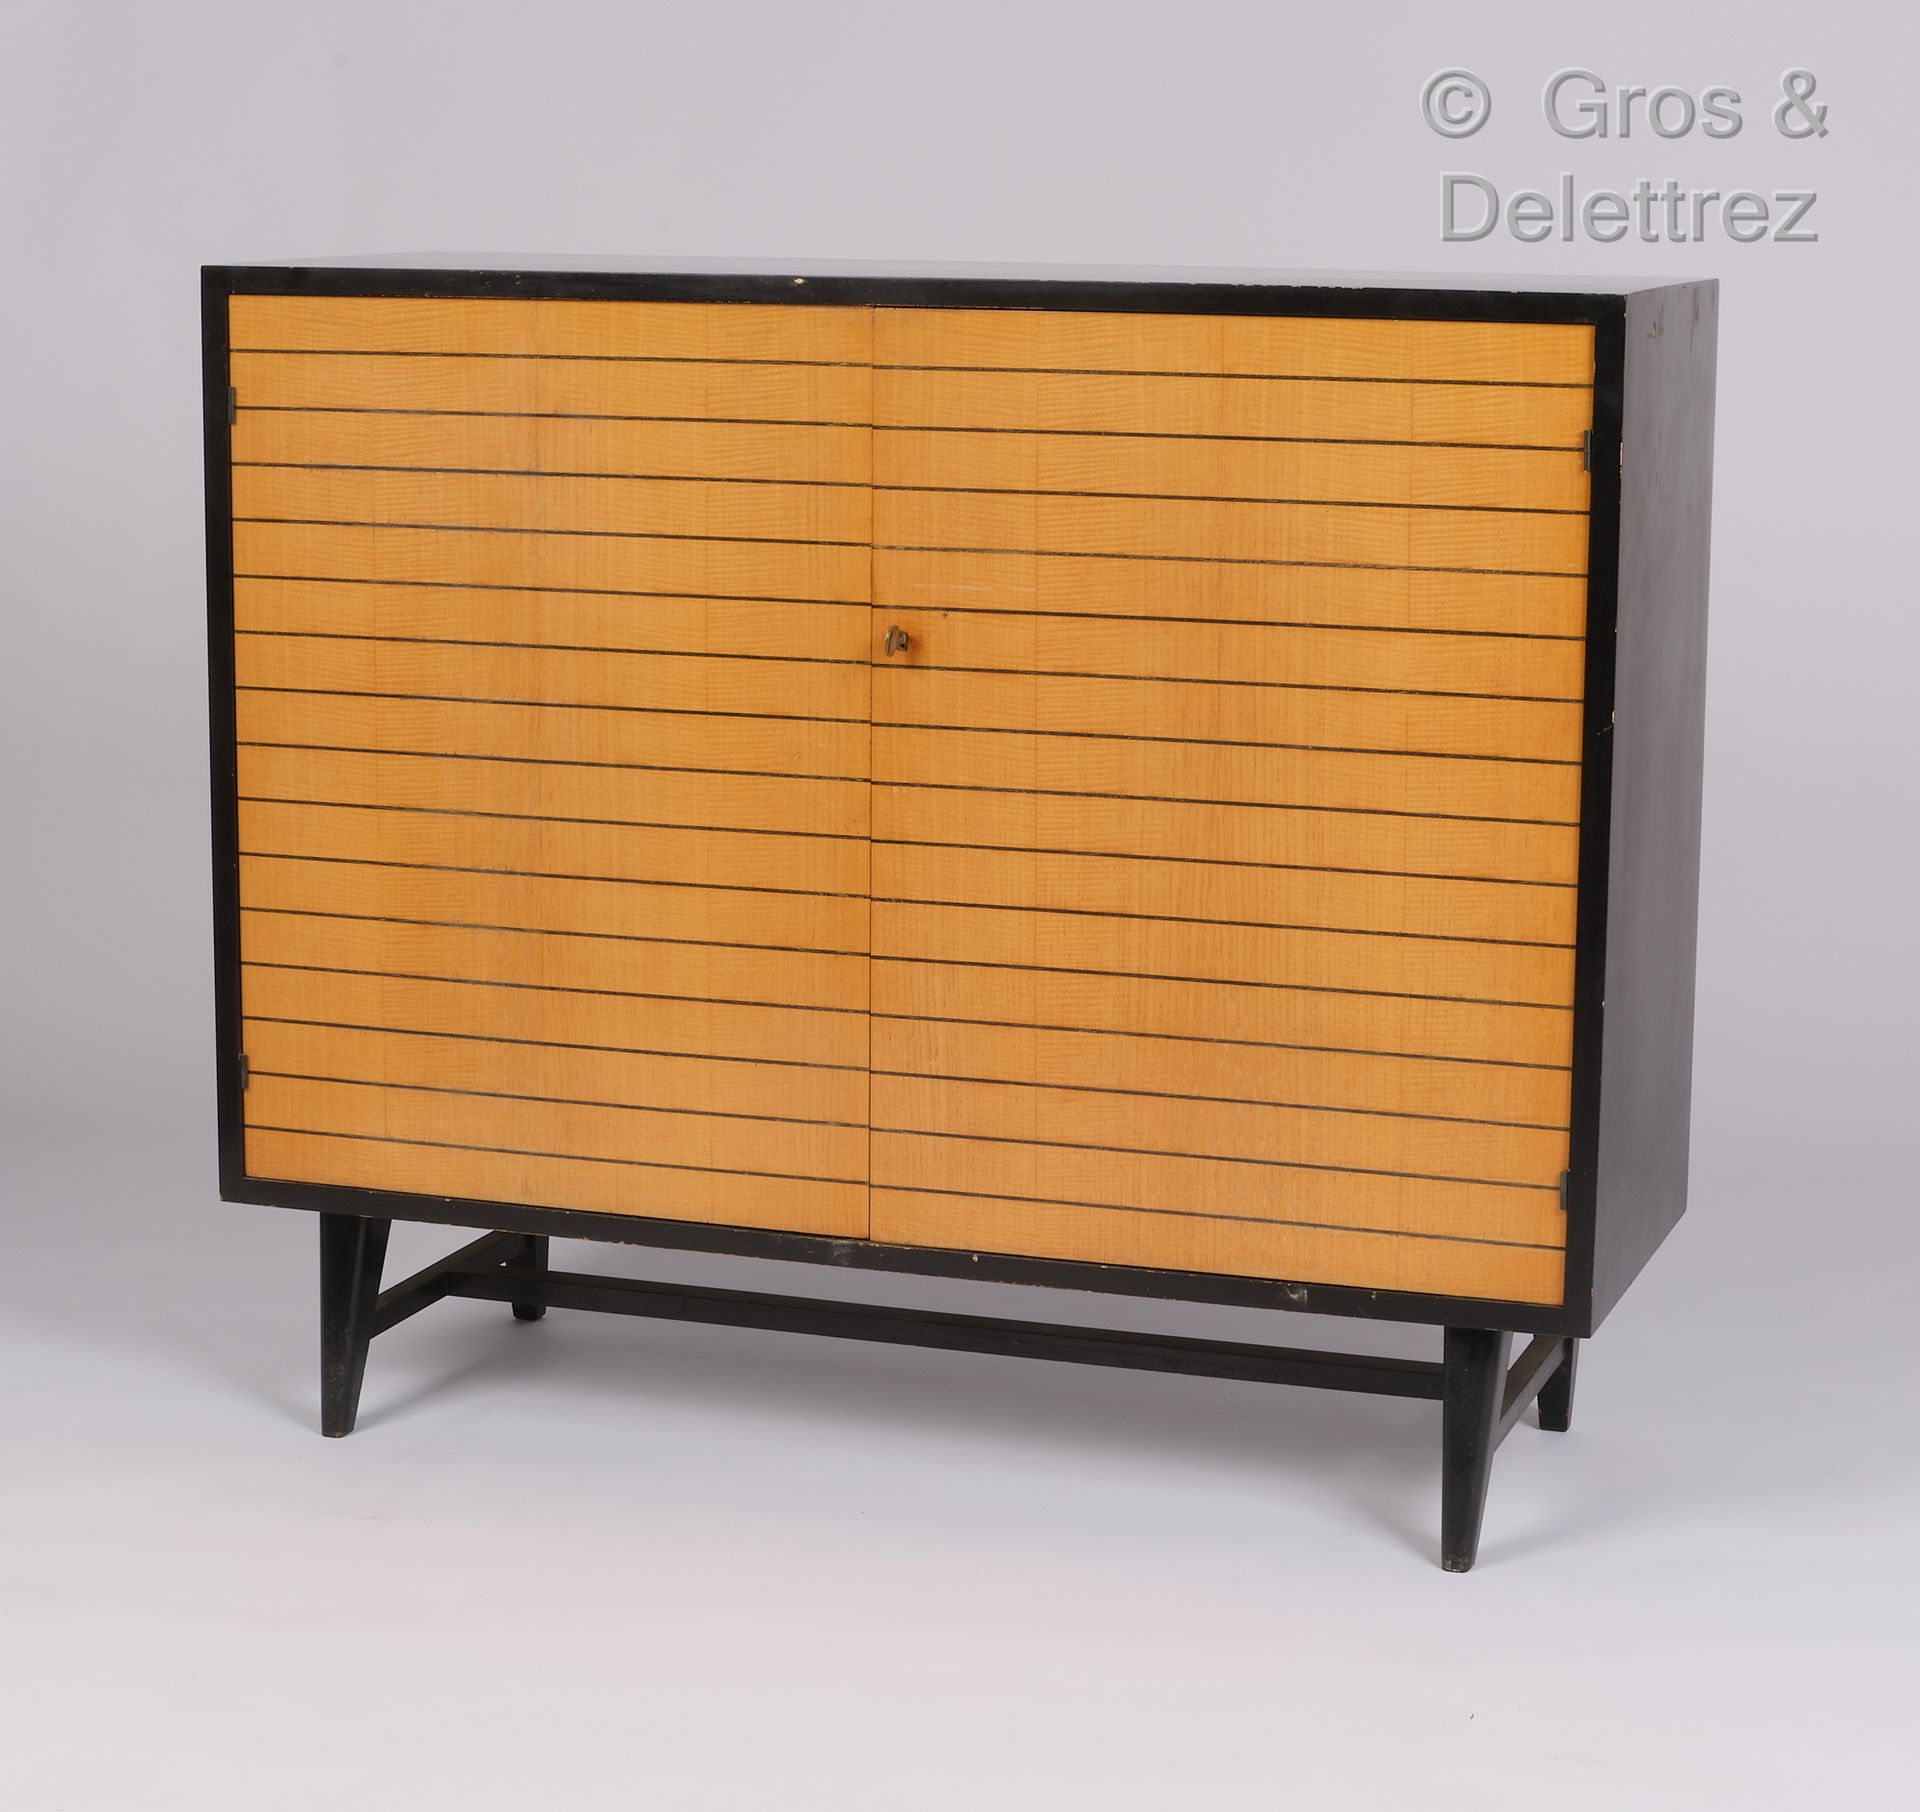 Null 莫里斯-弗拉歇 (1872-1964)

黑色漆面木质餐具柜，前面有两扇门。

约1950年

高：100厘米，宽：119厘米，深：43厘米

(使用&hellip;